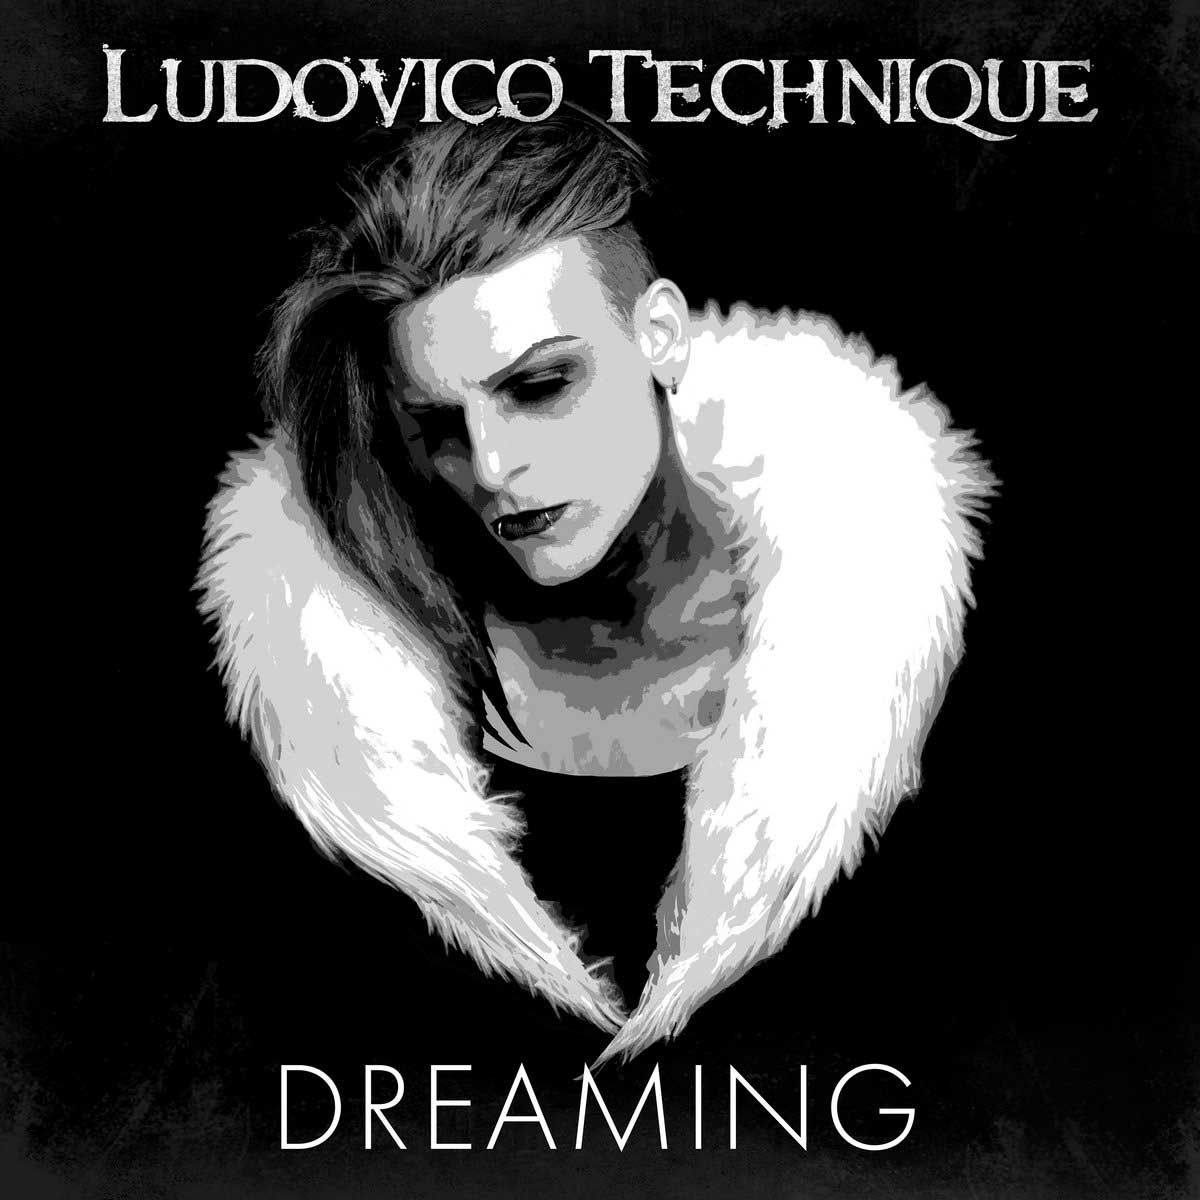 Ludovico Technique - Dreaming - Ludovico Technique - Dreaming